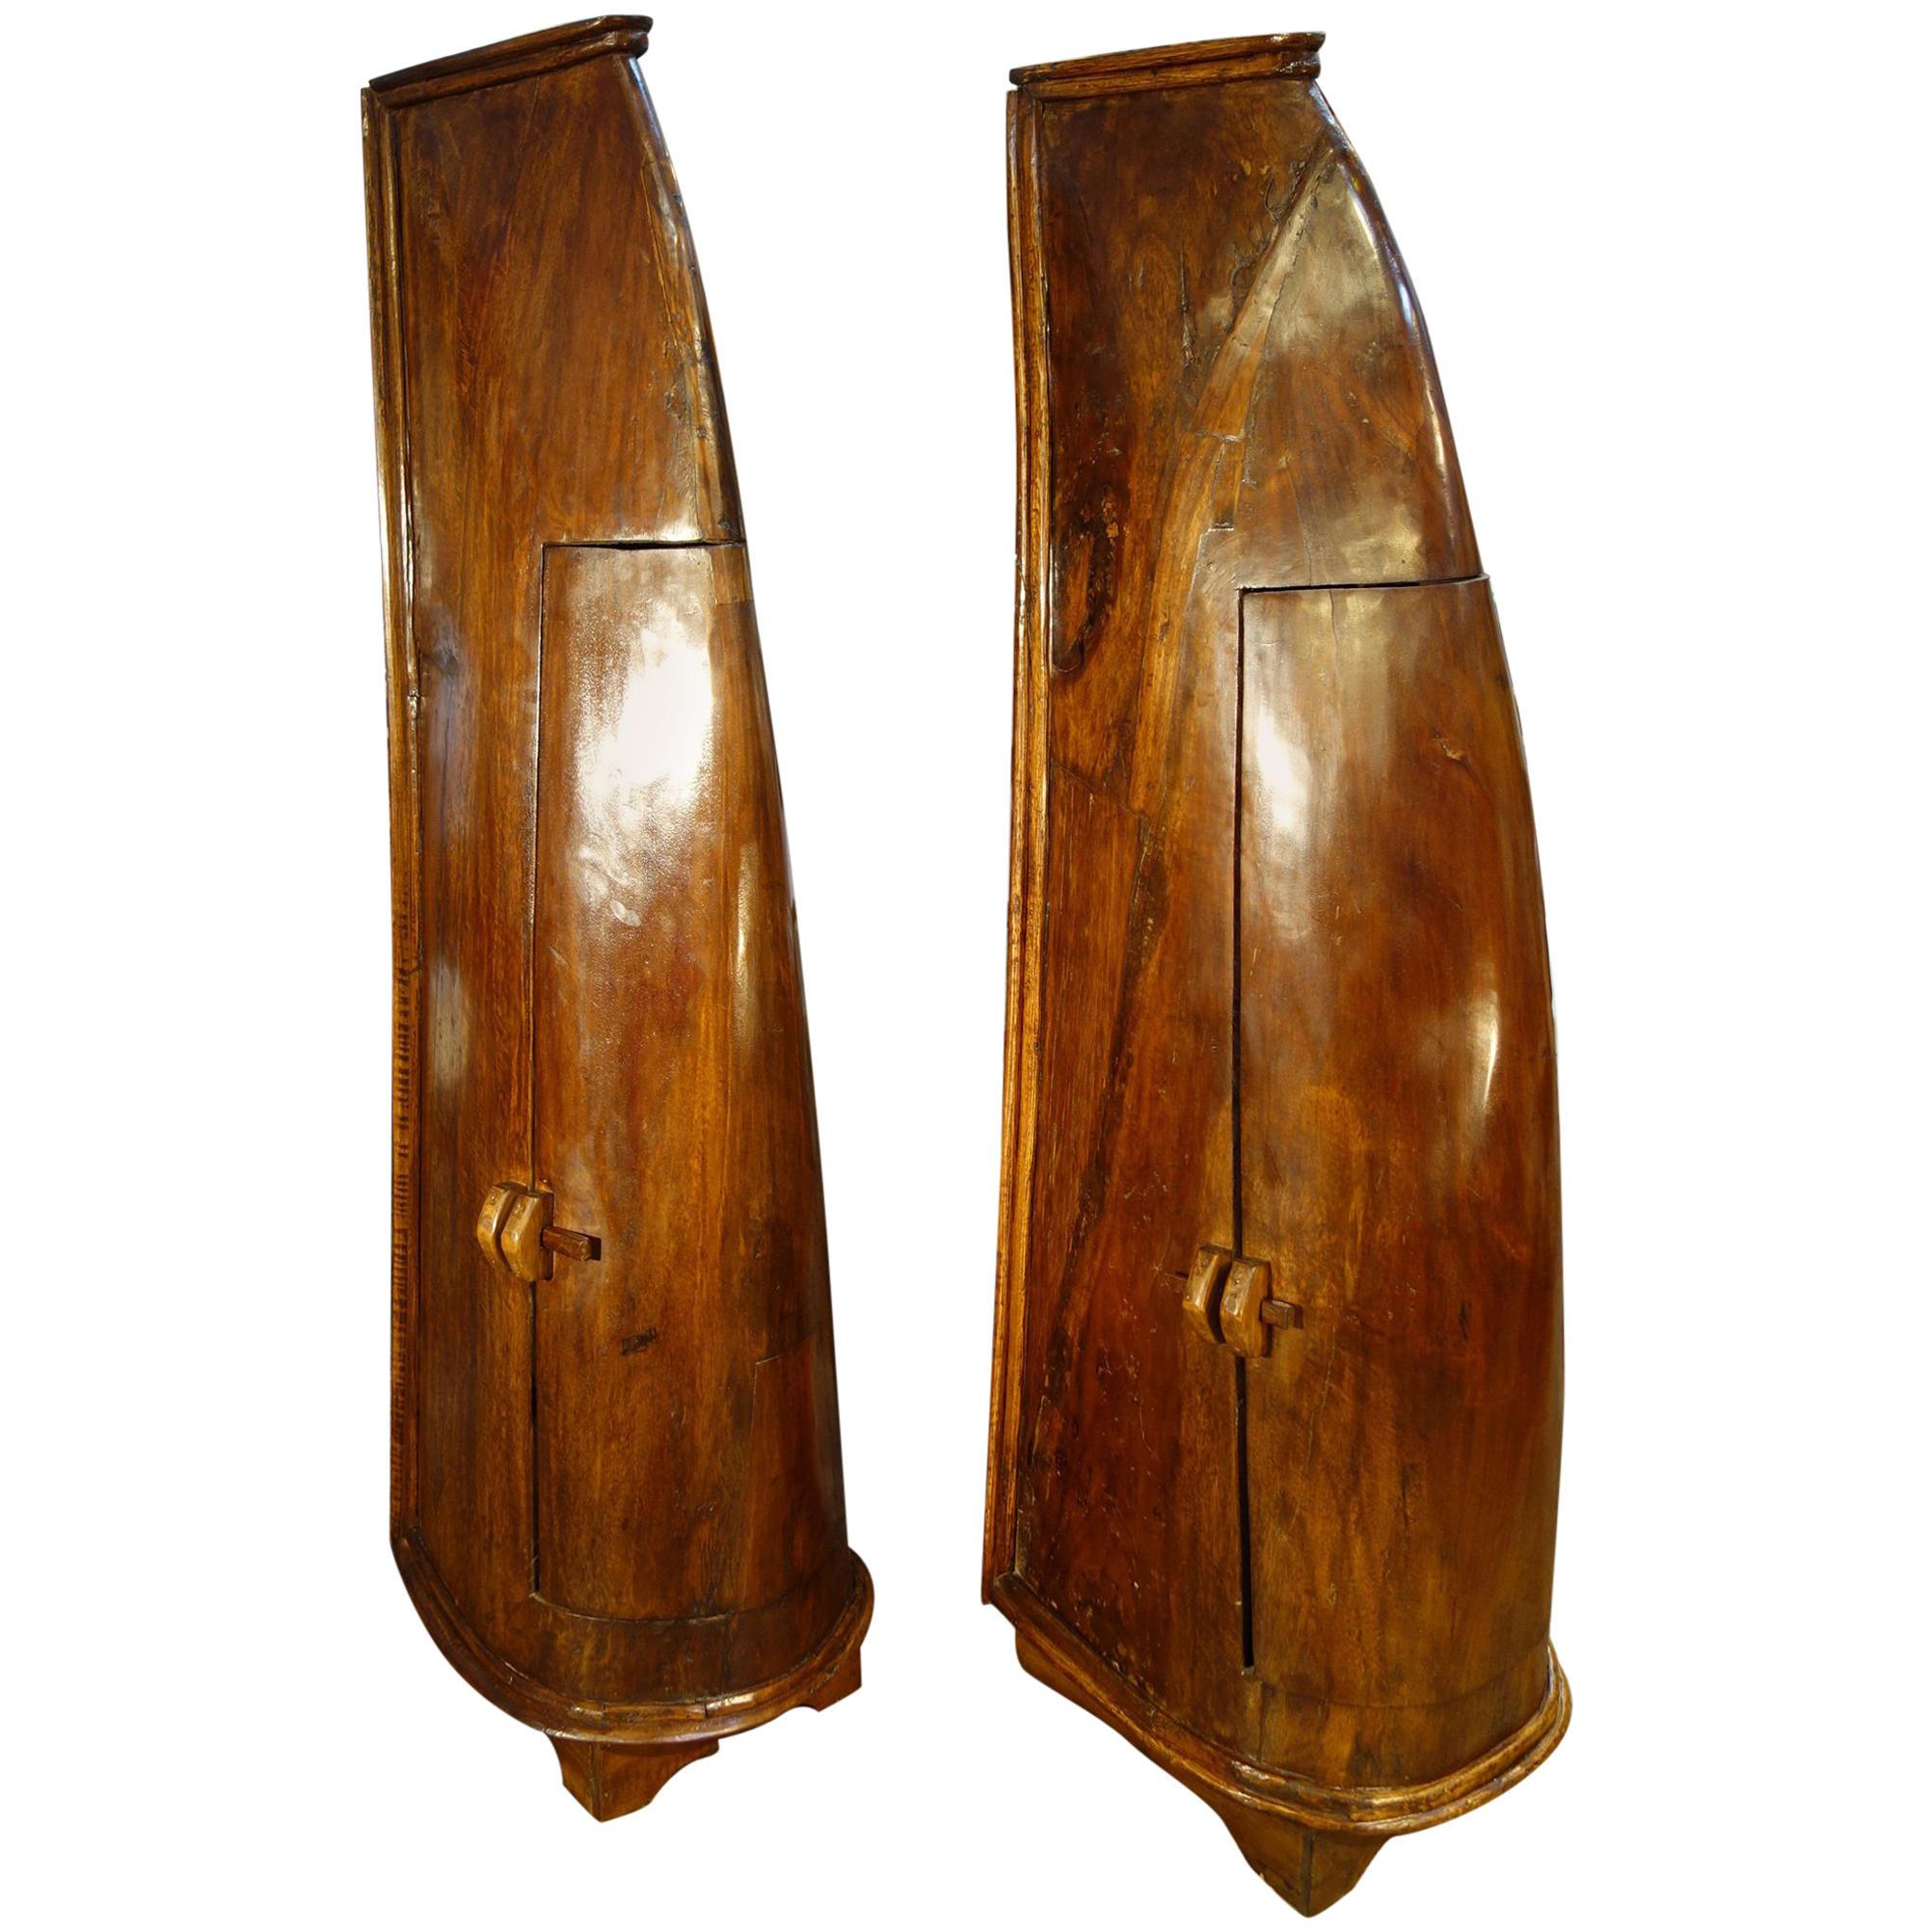 Antique Italian Handcrafted Primitive 19th Century Teak Canoe Cabinet Pair